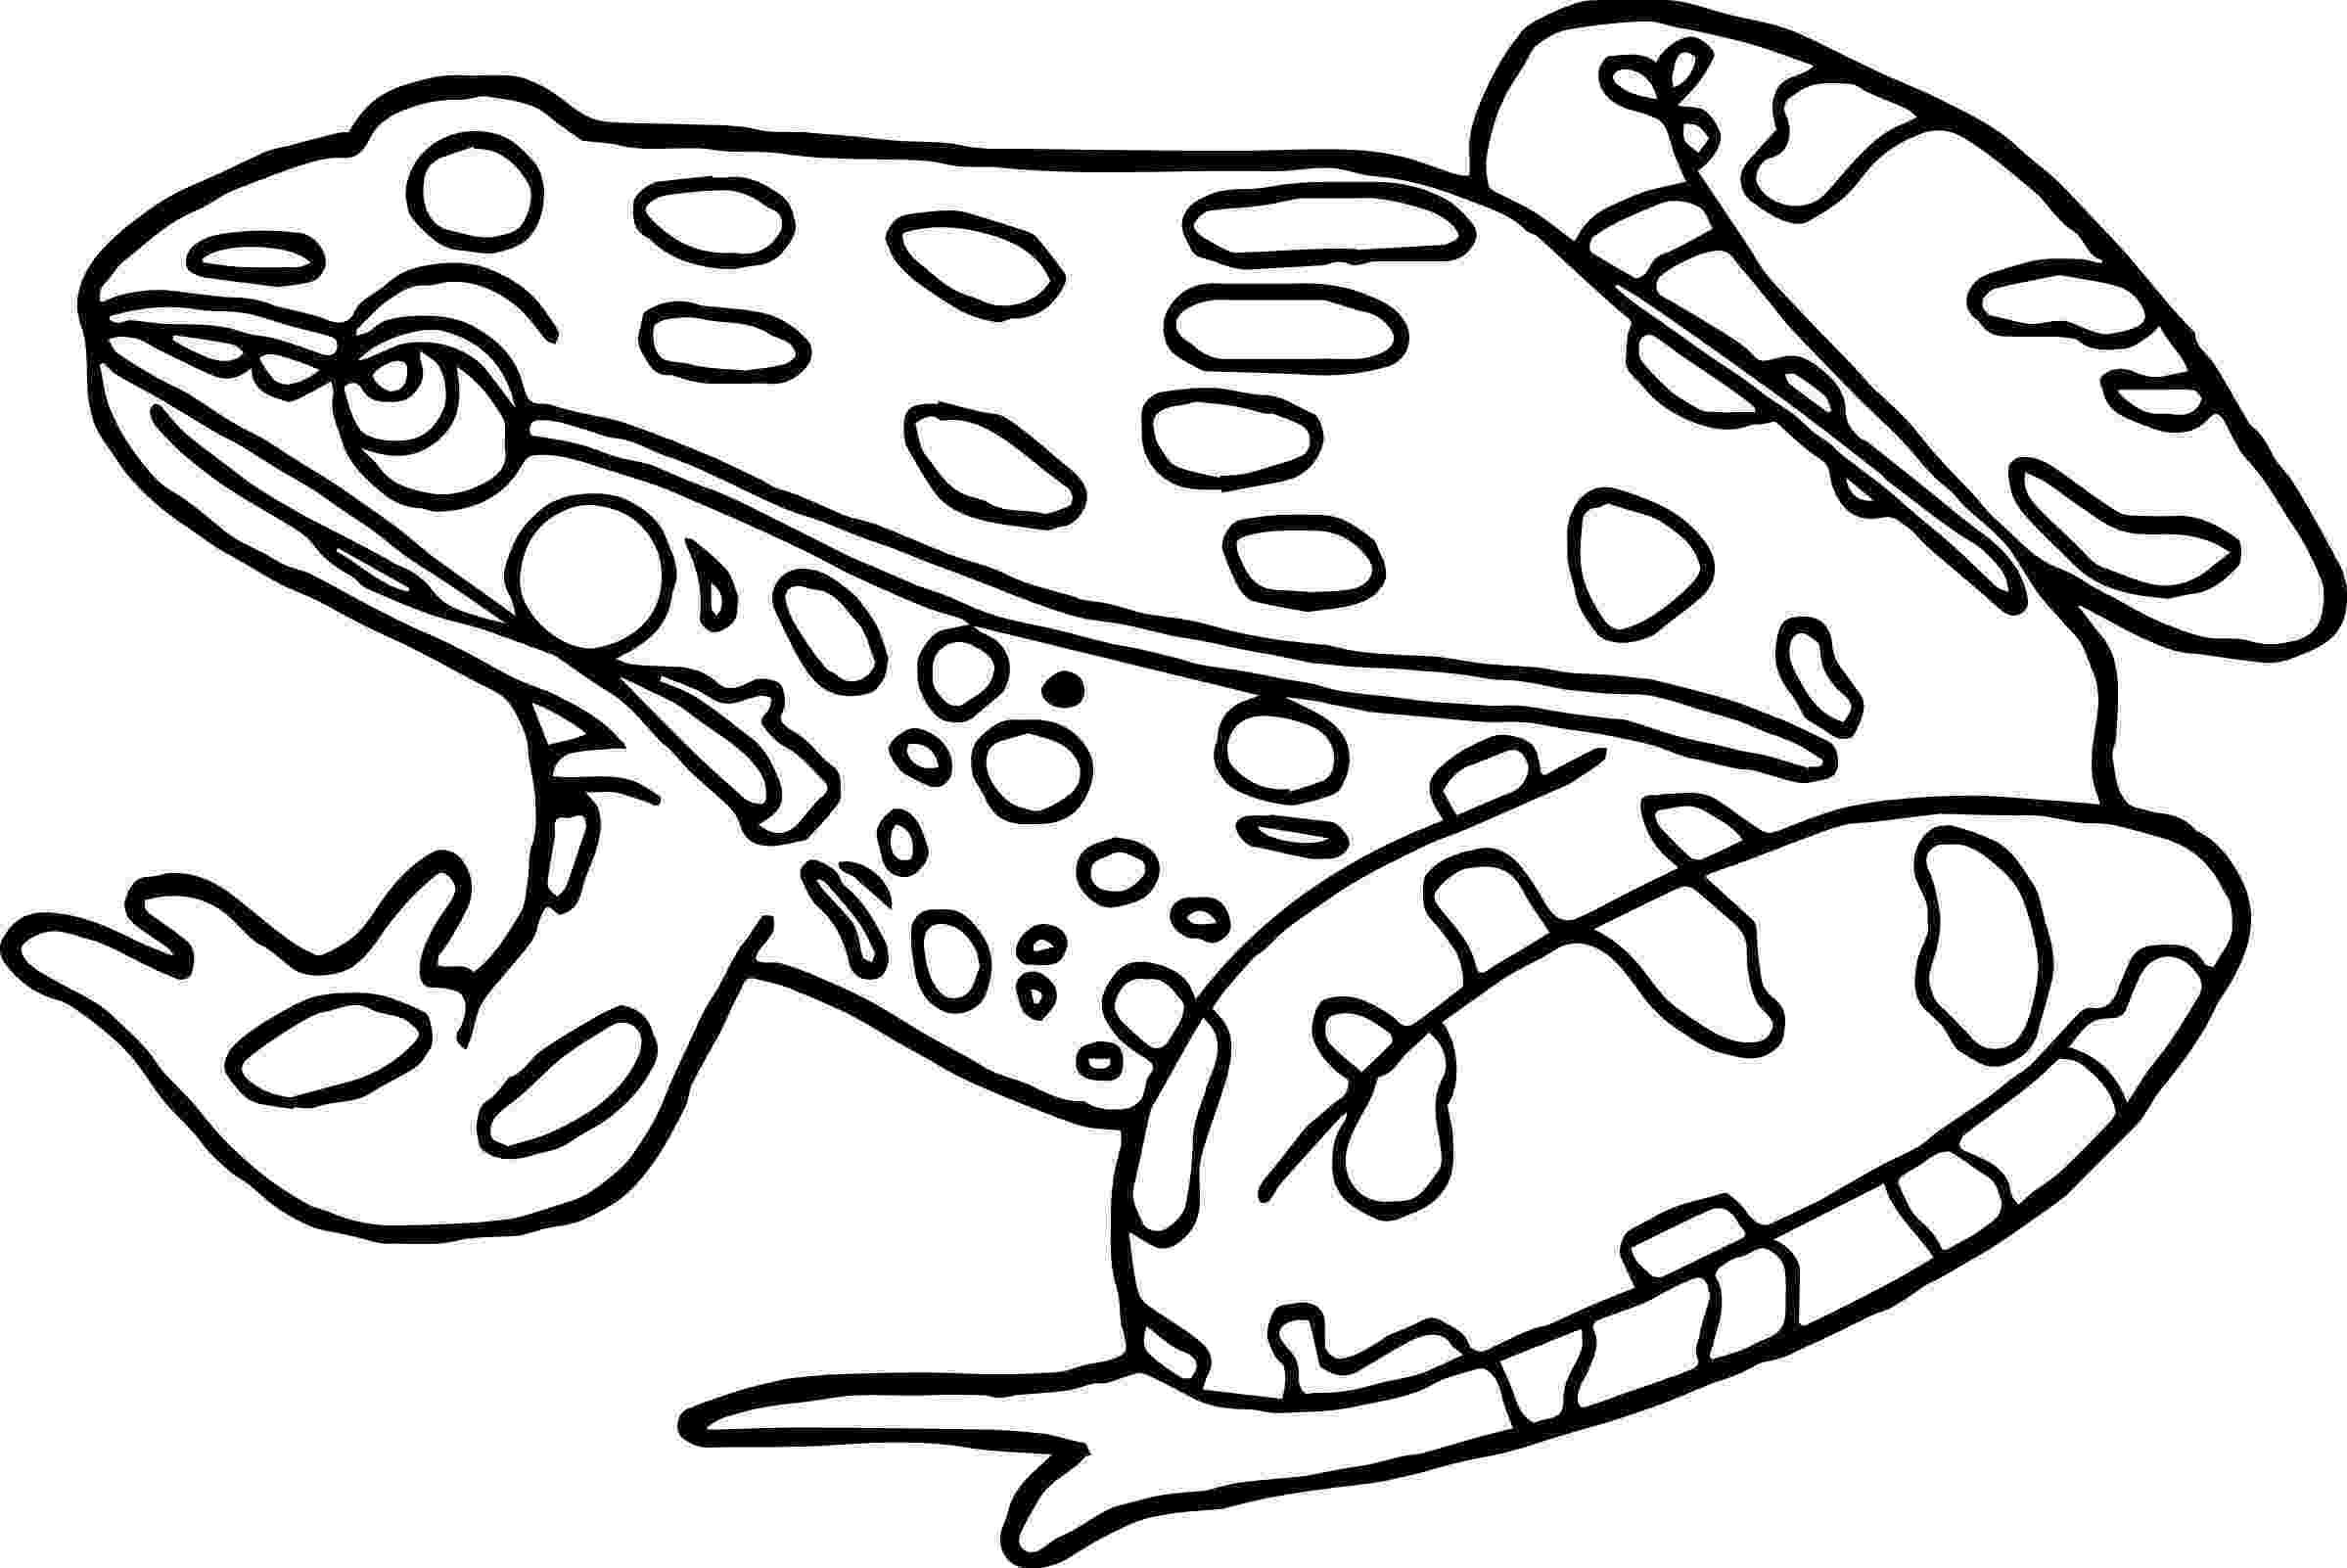 amphibian coloring pages amphibian coloring pages wecoloringpagecom coloring pages amphibian 